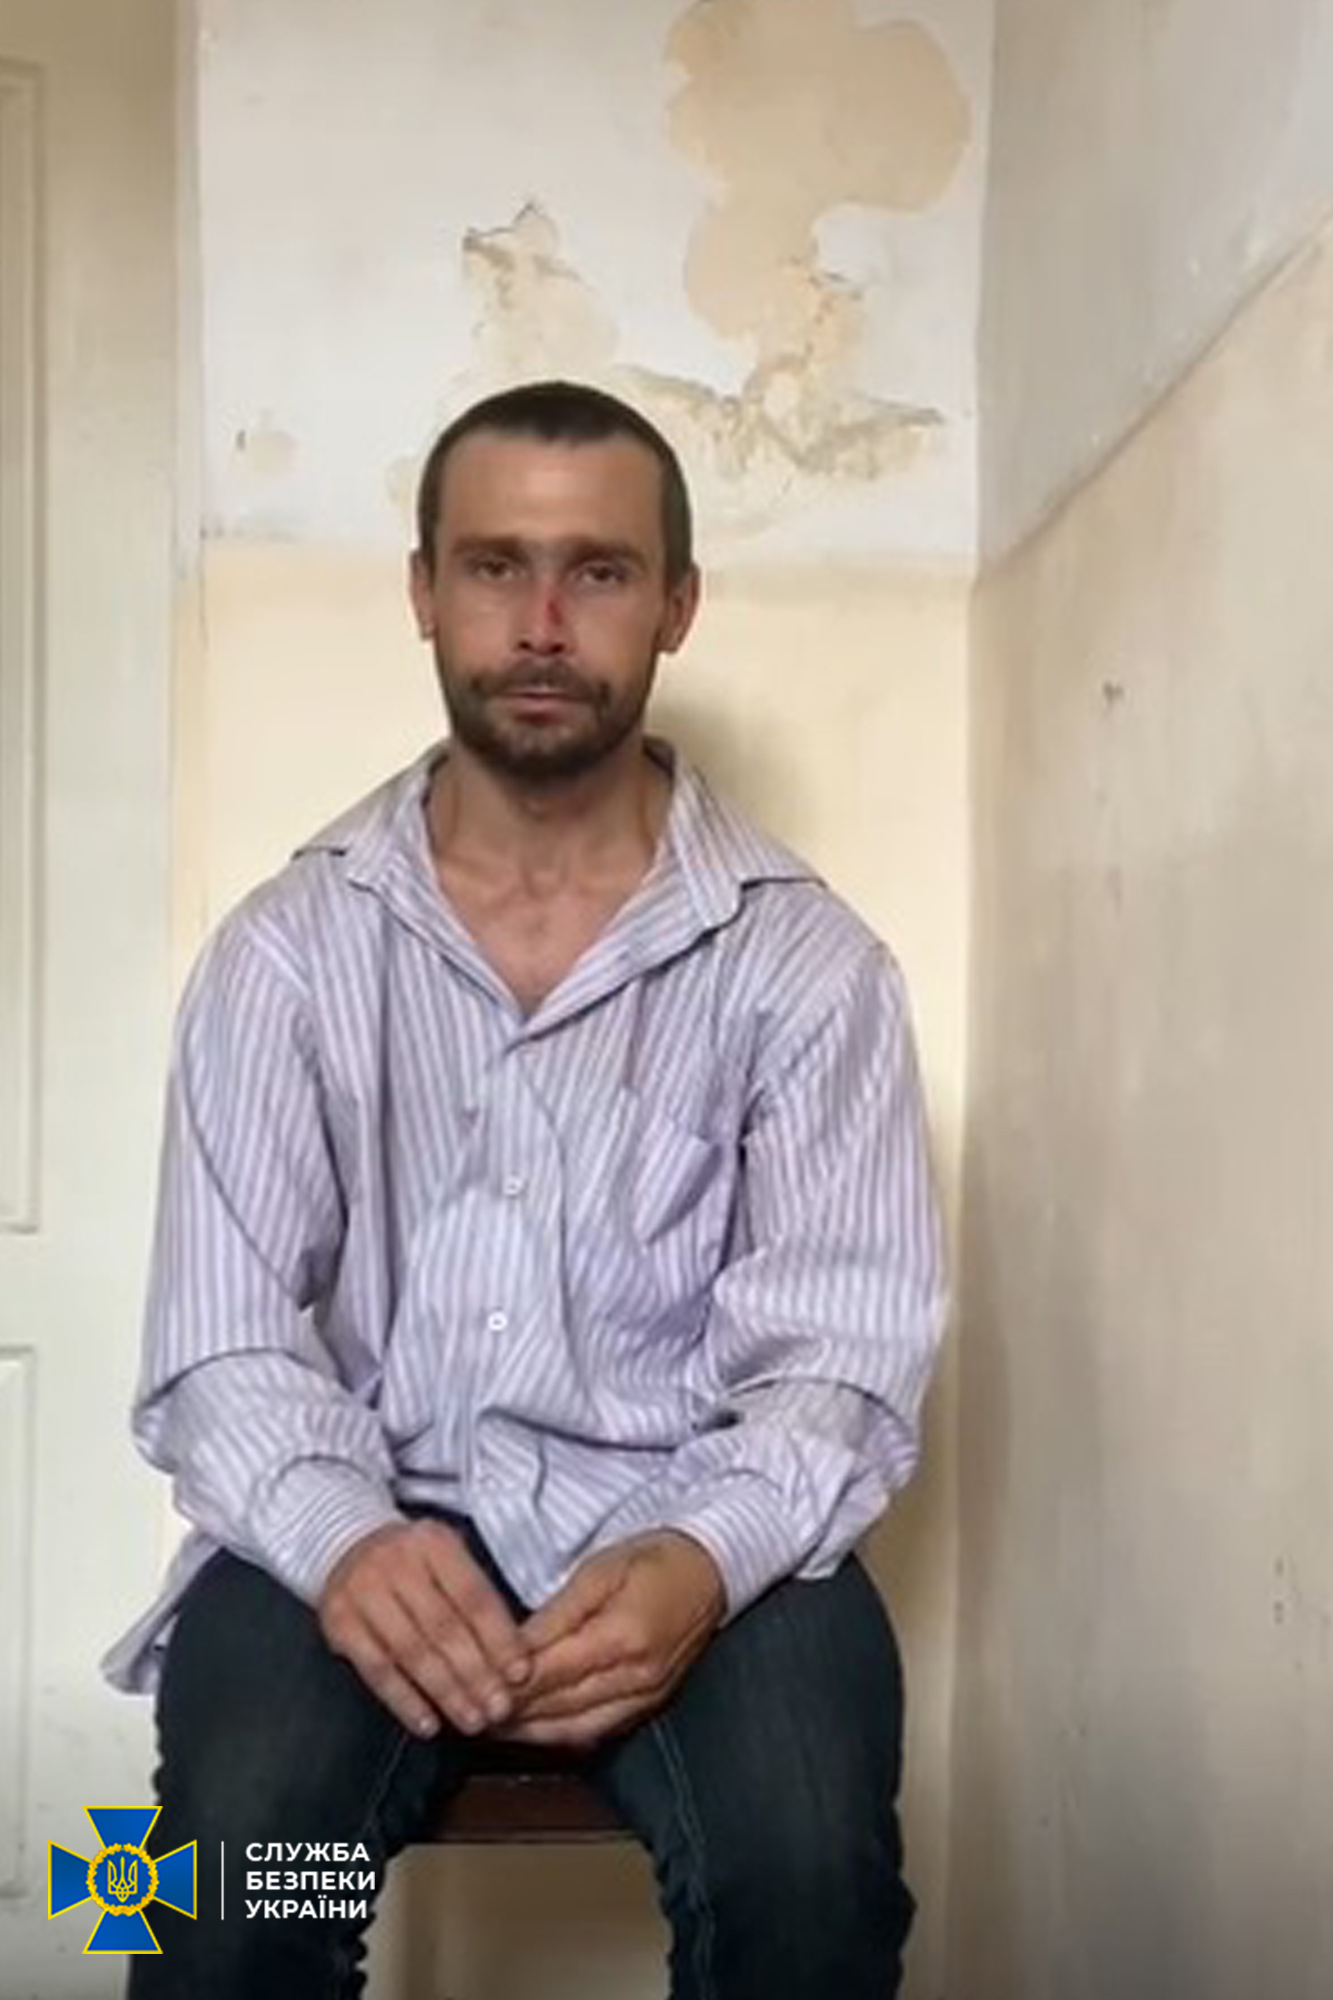 Десять років тюрми отримав житель Краматорська, який воював на боці т.з. “ДНР” 1